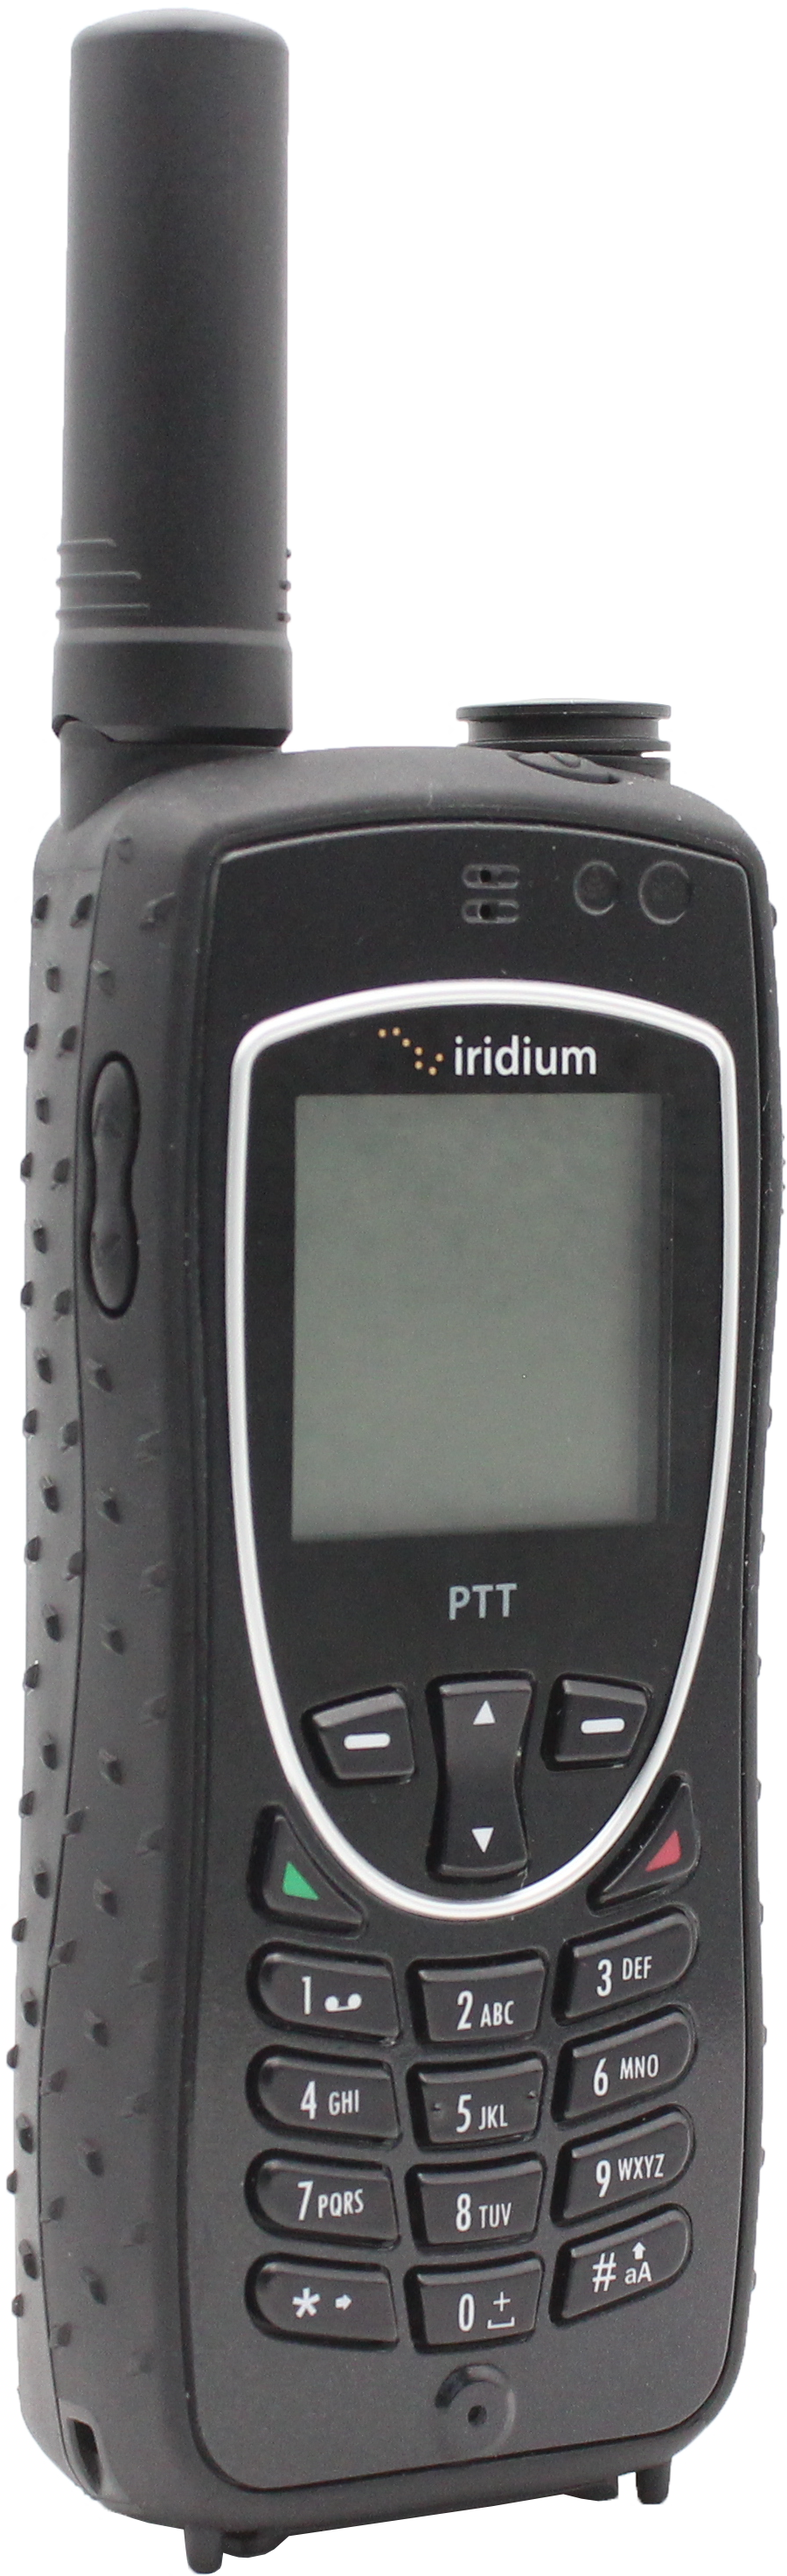 Iridium 9575 PTT - POA